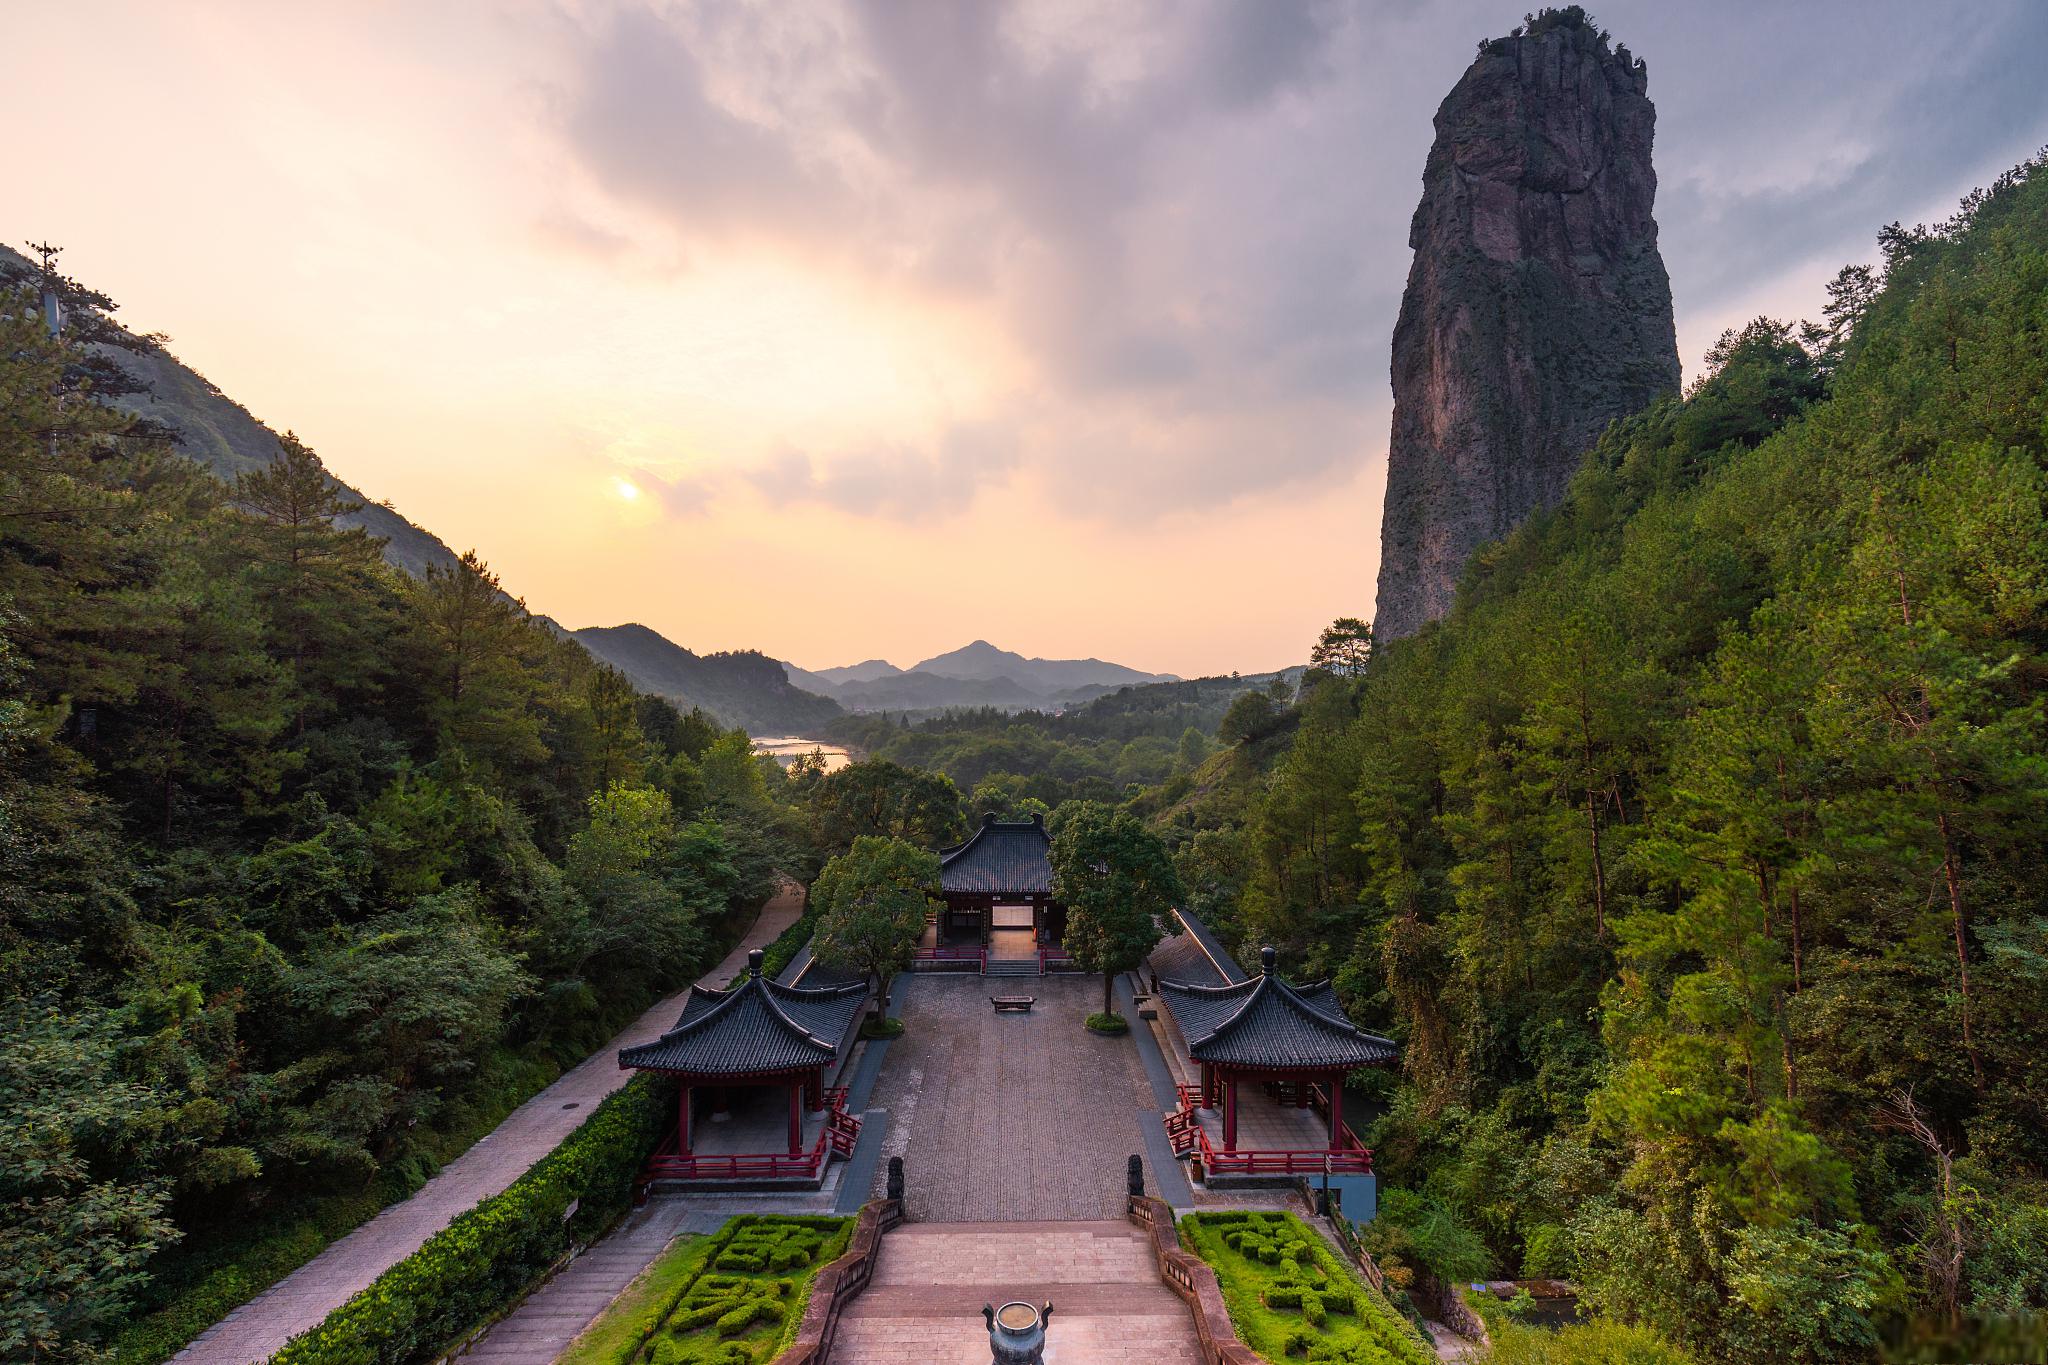 天台山风景名胜区 天台山风景名胜区位于浙江省台州市,被誉为佛教胜地